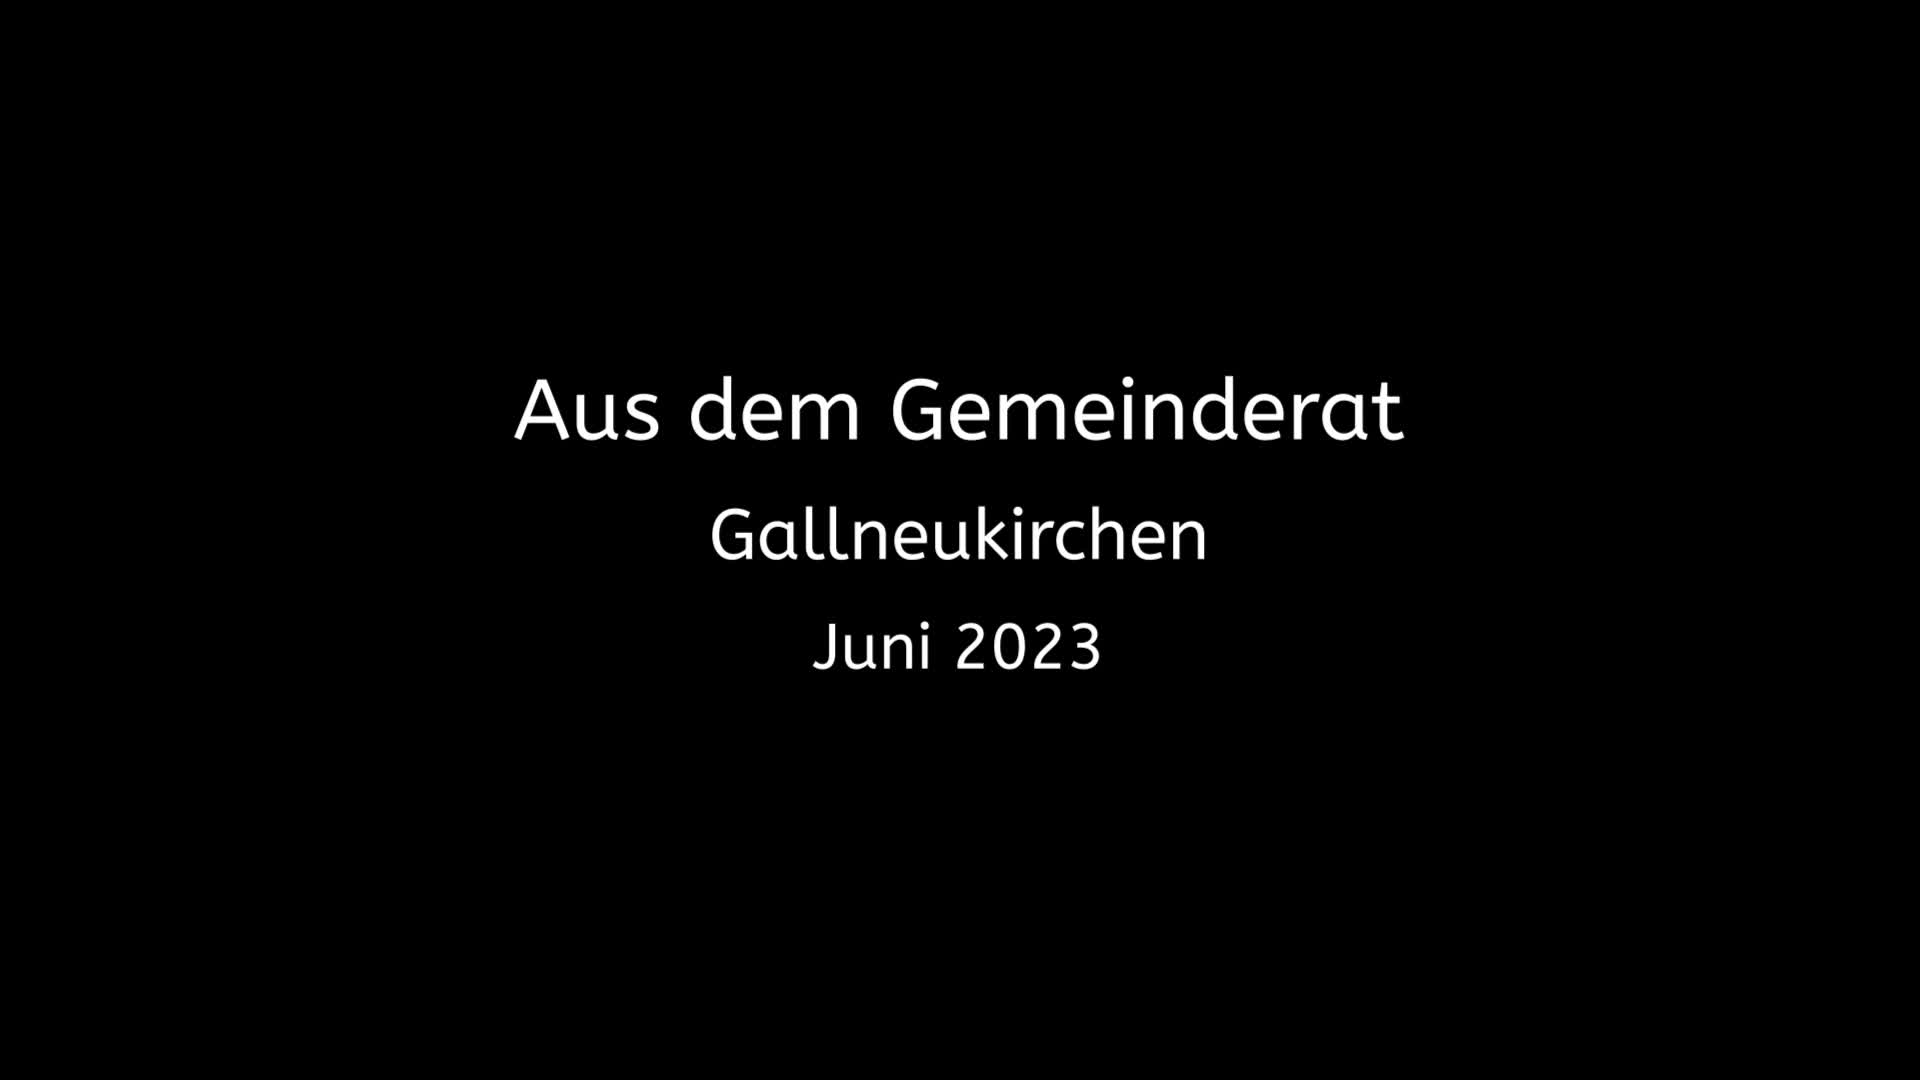 Aus dem Gemeinderrat Gallneukirchen - Juni 2023